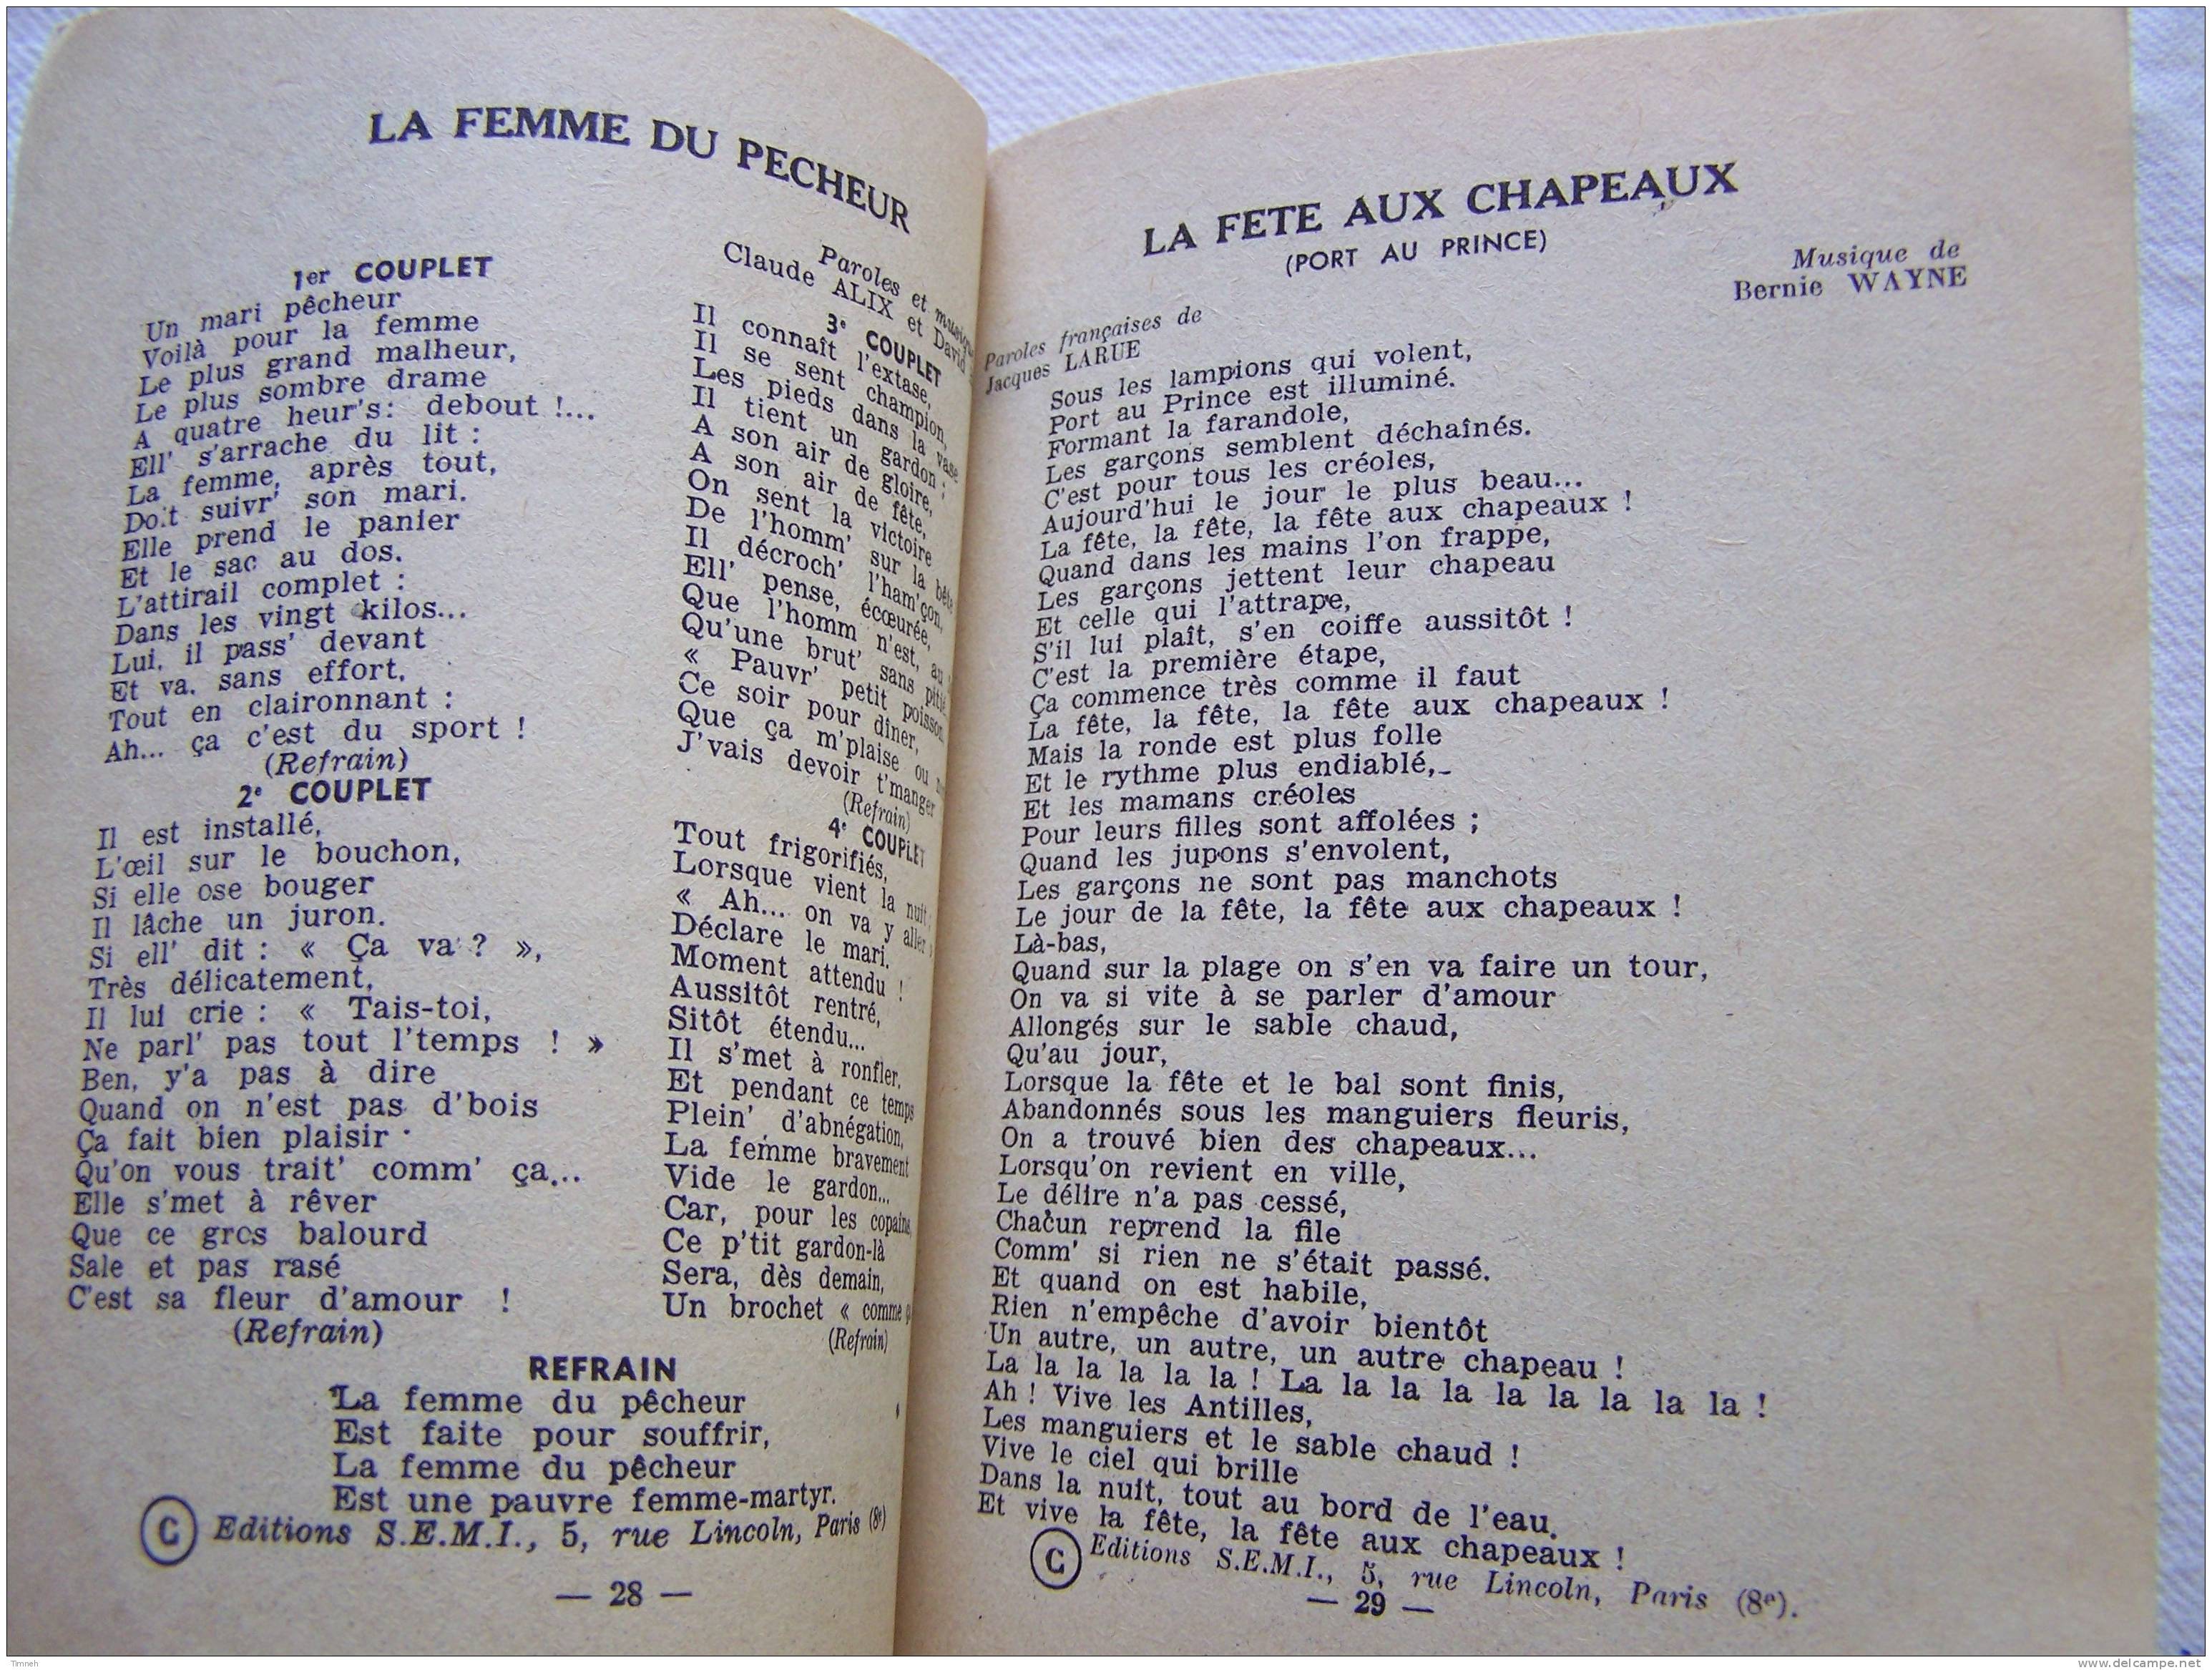 Petit Livret Ancien-CHANTONS TOUS RECUEIL N°15-EDITIONS MERIDIAN § S.E.M.I. - Musik